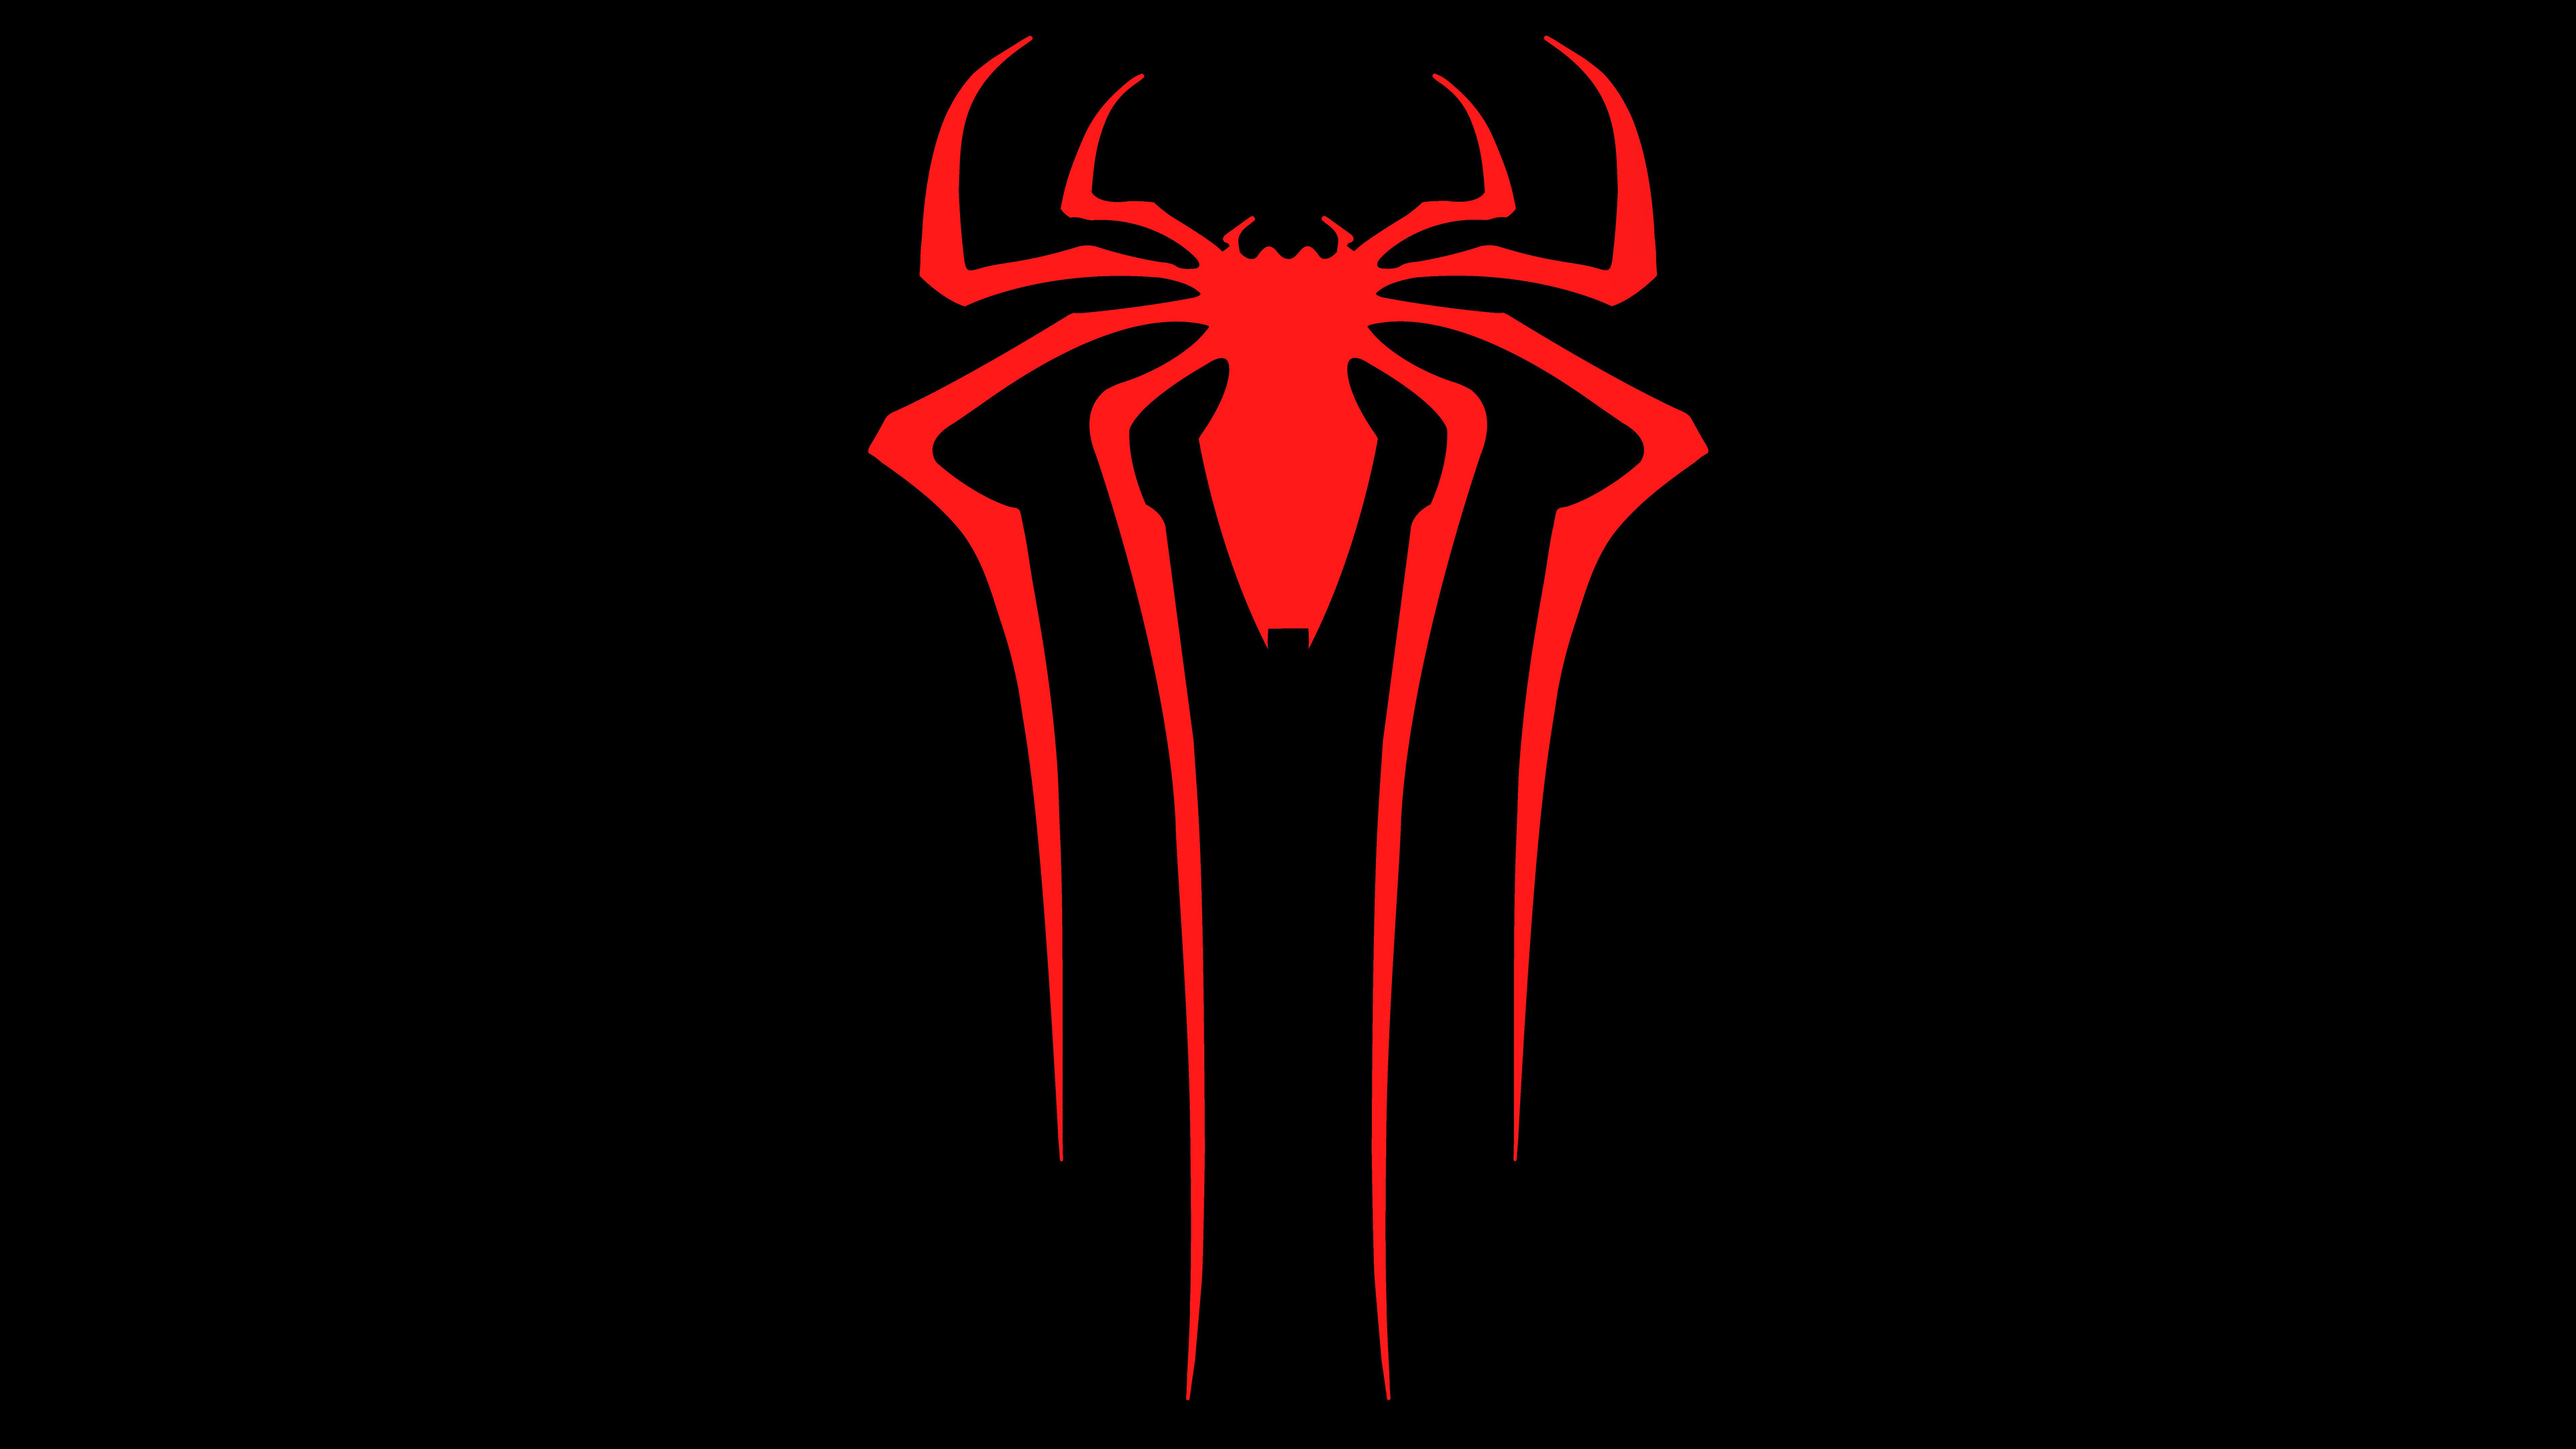 Wallpaper 4k Spiderman Logo 8k Wallpaper